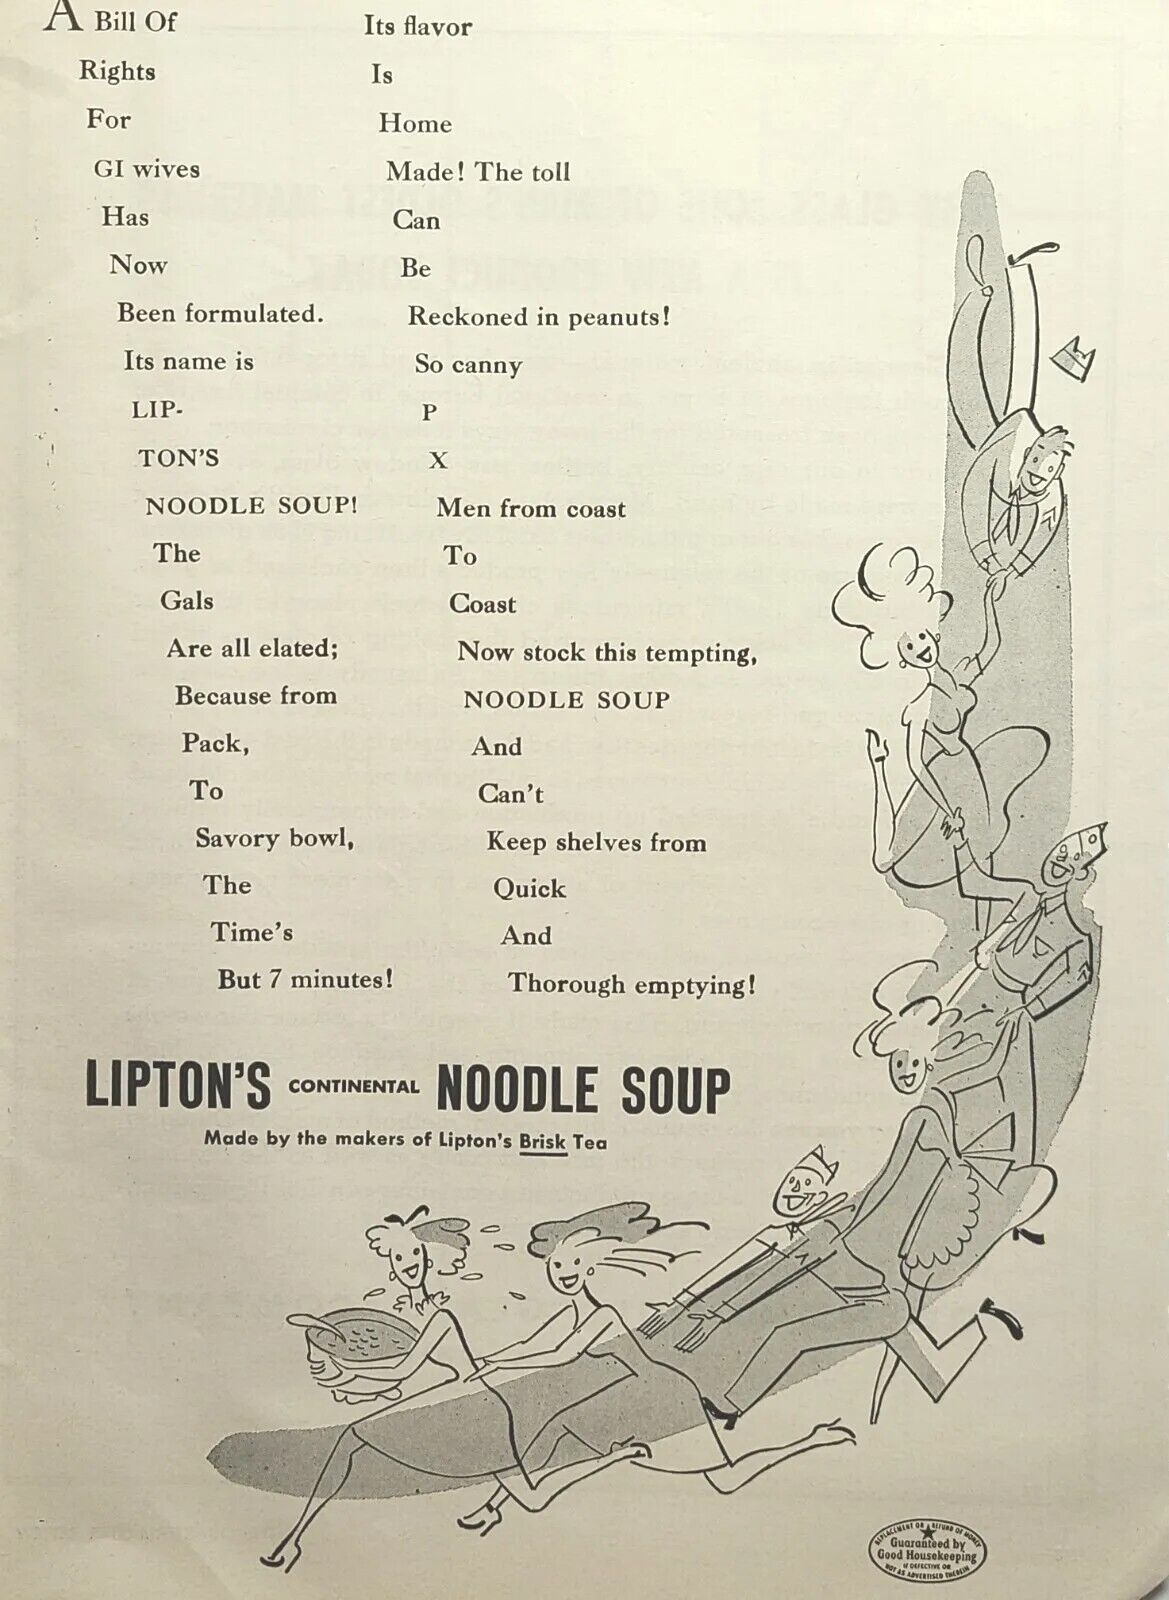 Lipton's Noodle Soup Servicemen Ladies Conga Line Dance Vintage Print Ad 1945